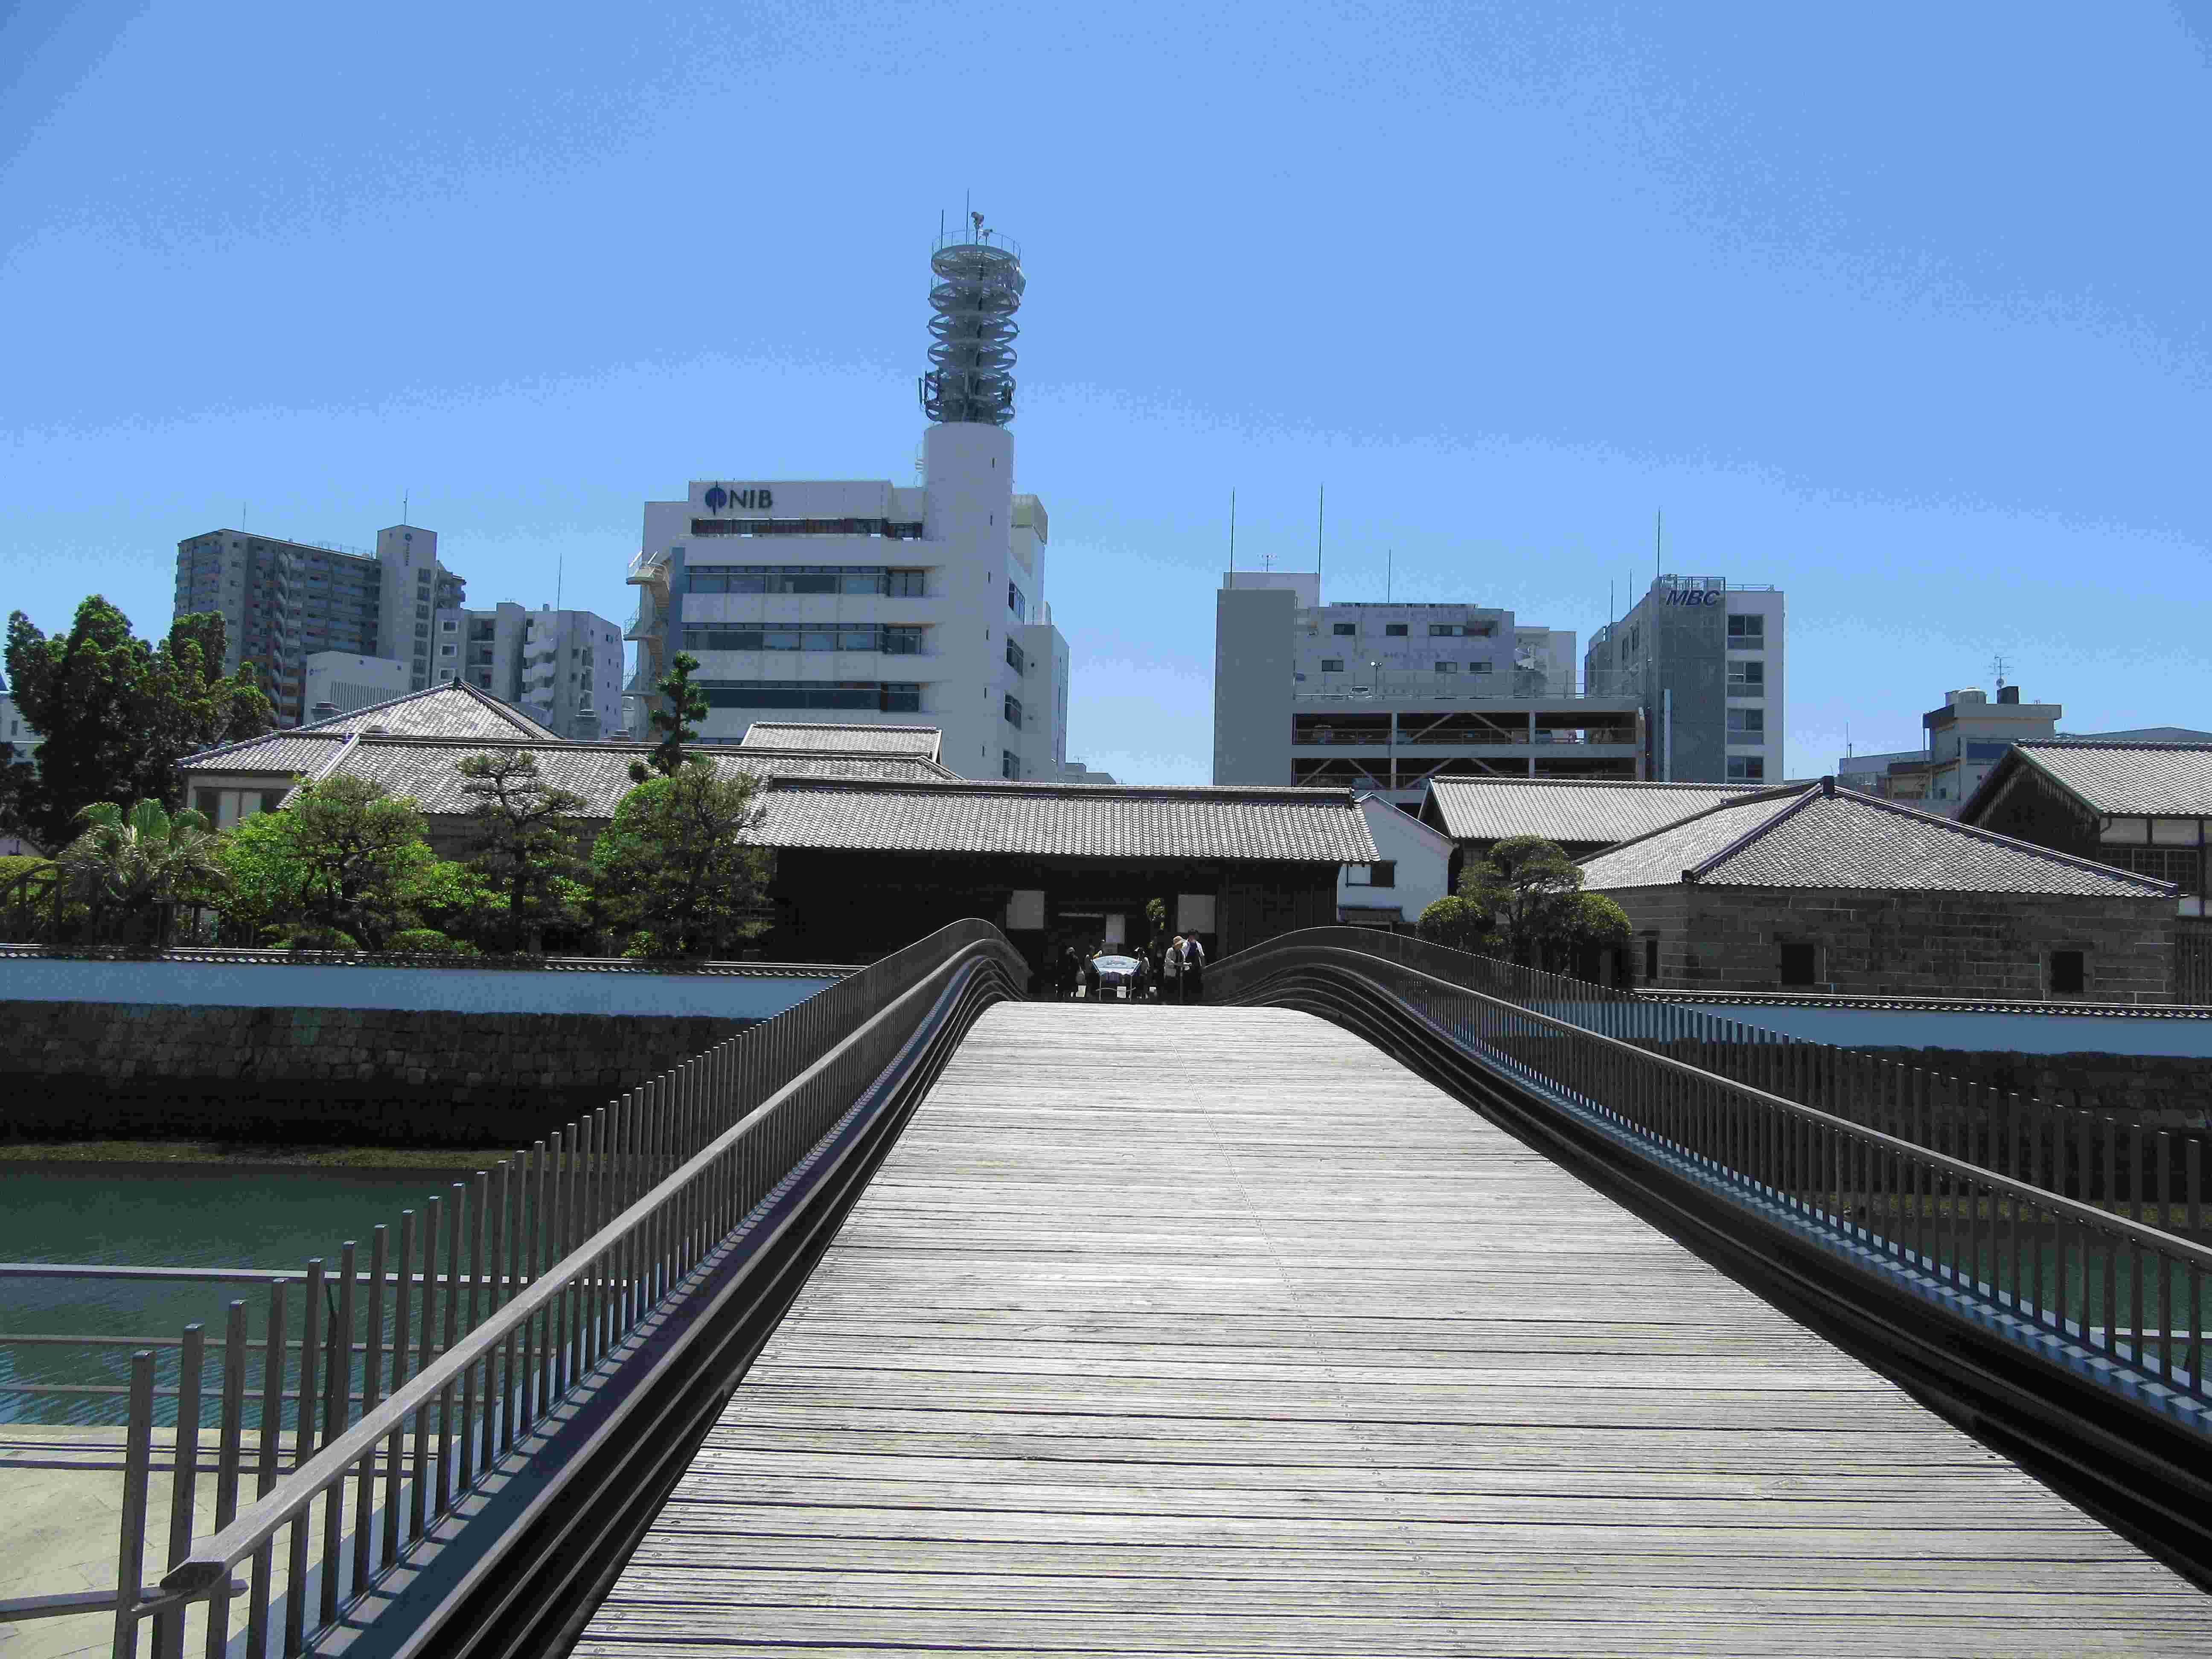 出島表門橋と、その奥にある長崎国際テレビ(NIB)